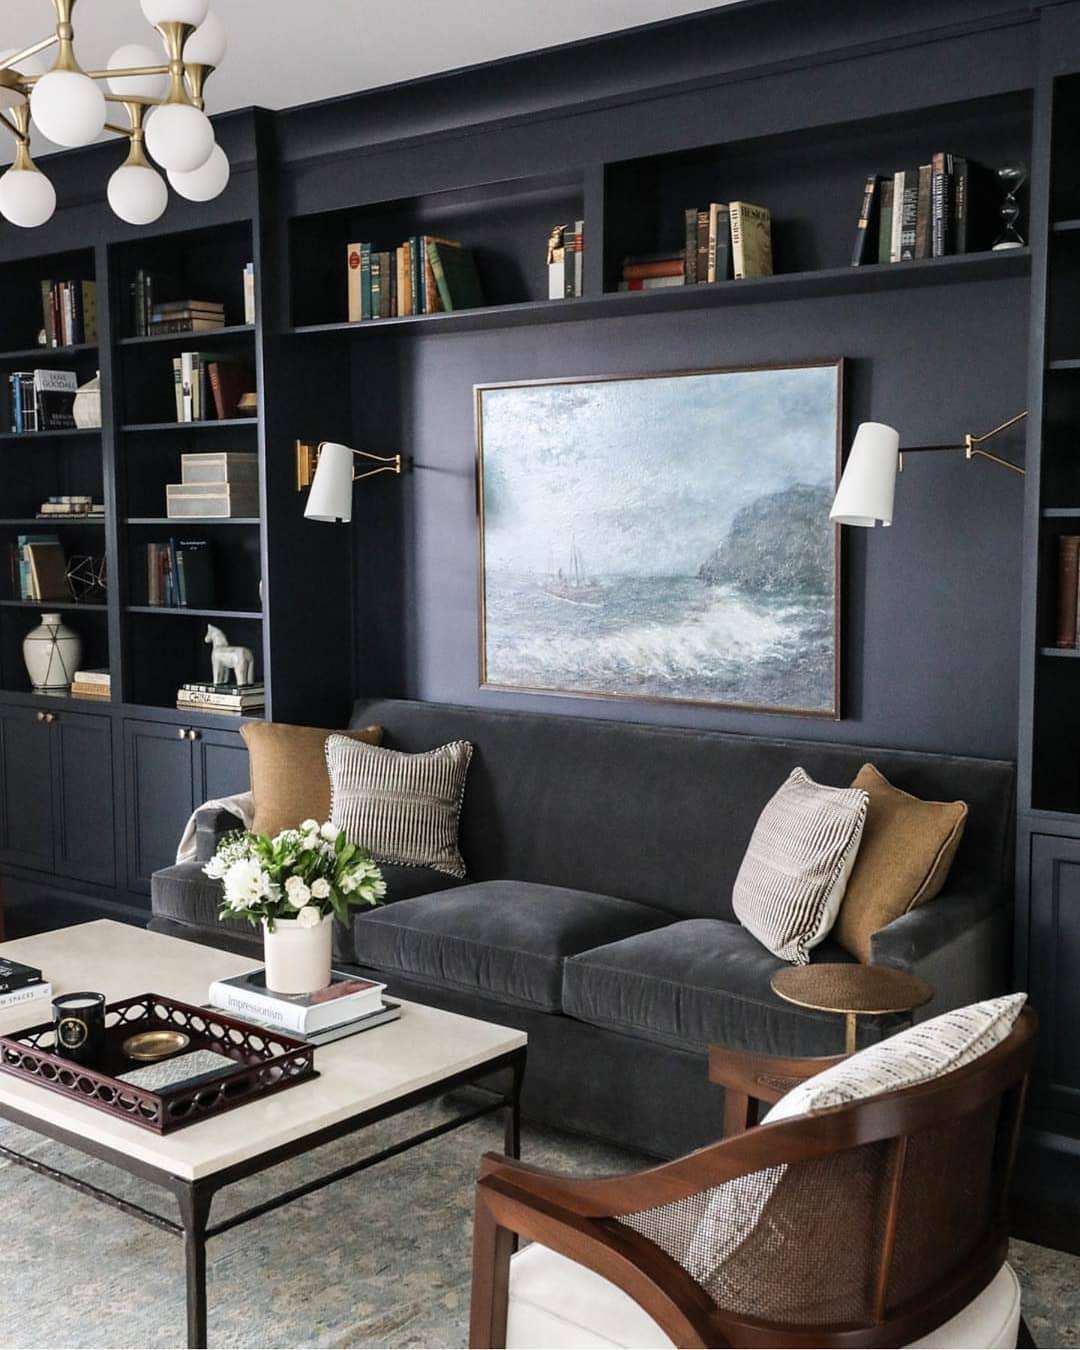 Un coin canapé bleu foncé avec étagères intégrées dans un salon.